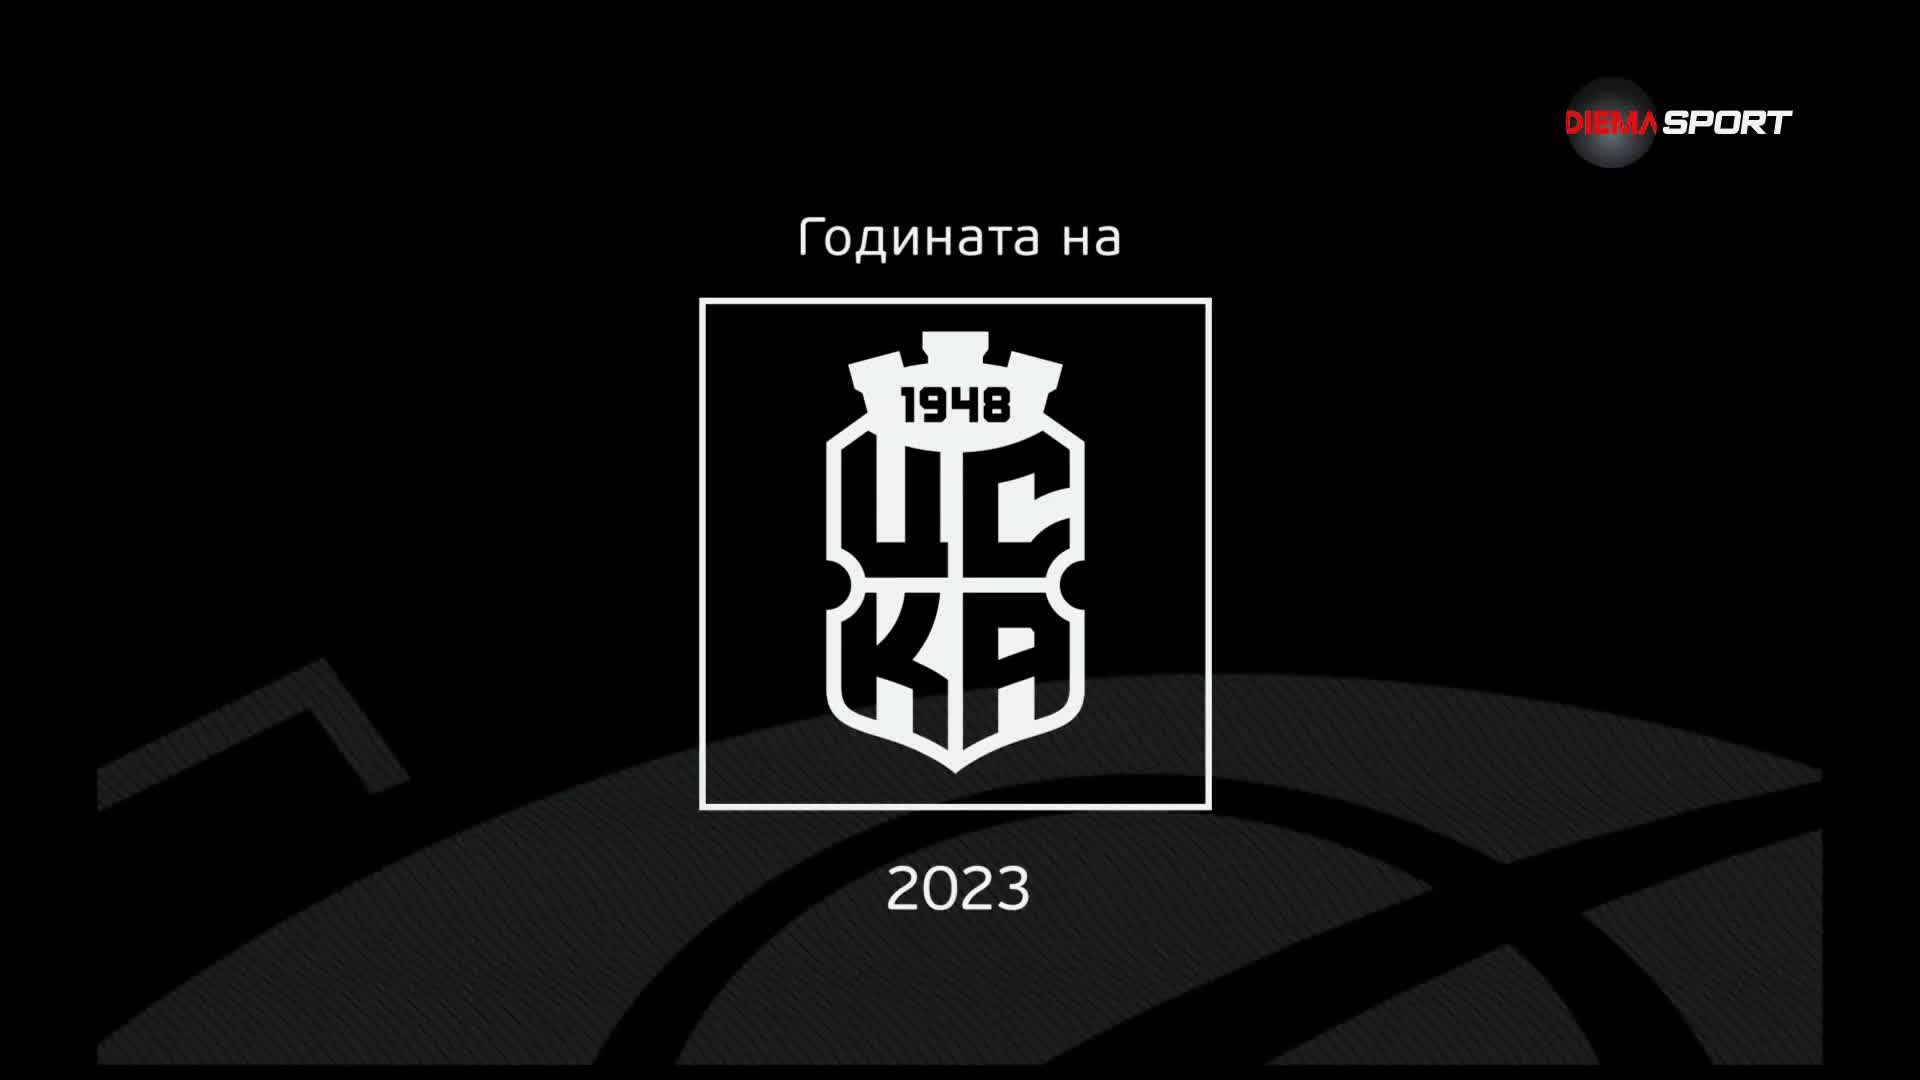 Годината на ЦСКА 1948